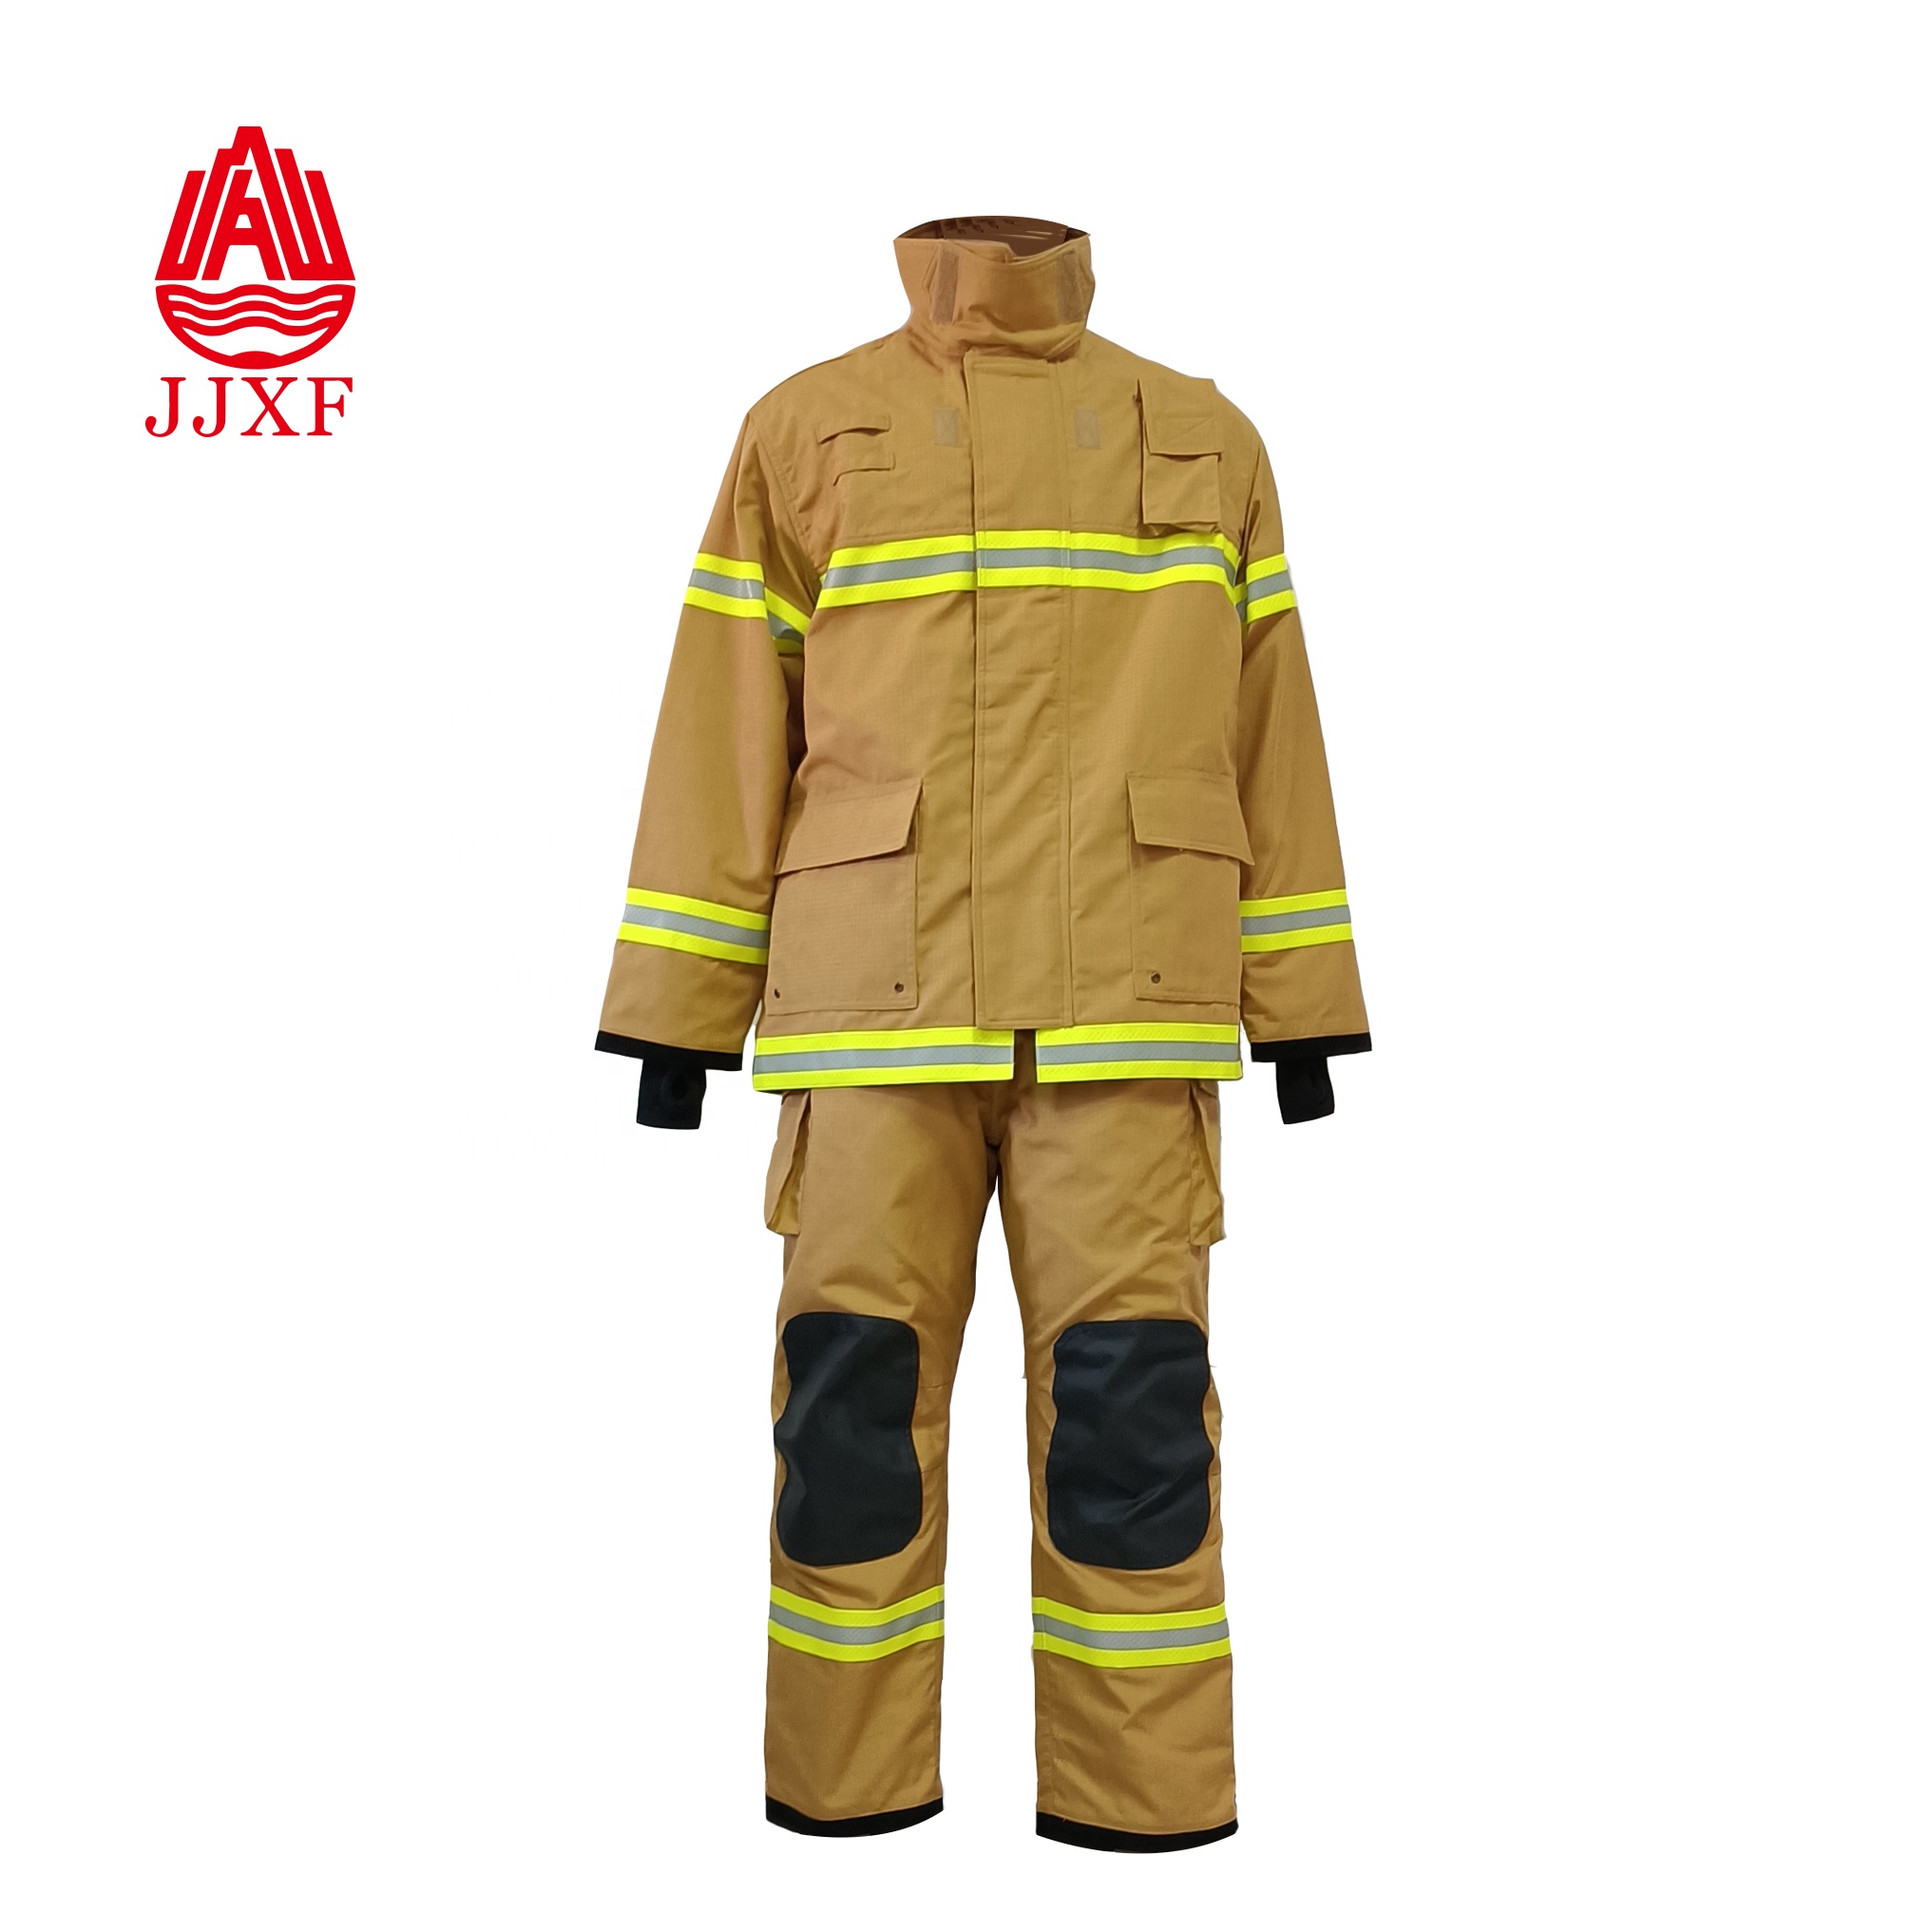  fireman firefighter fire resistance jacket